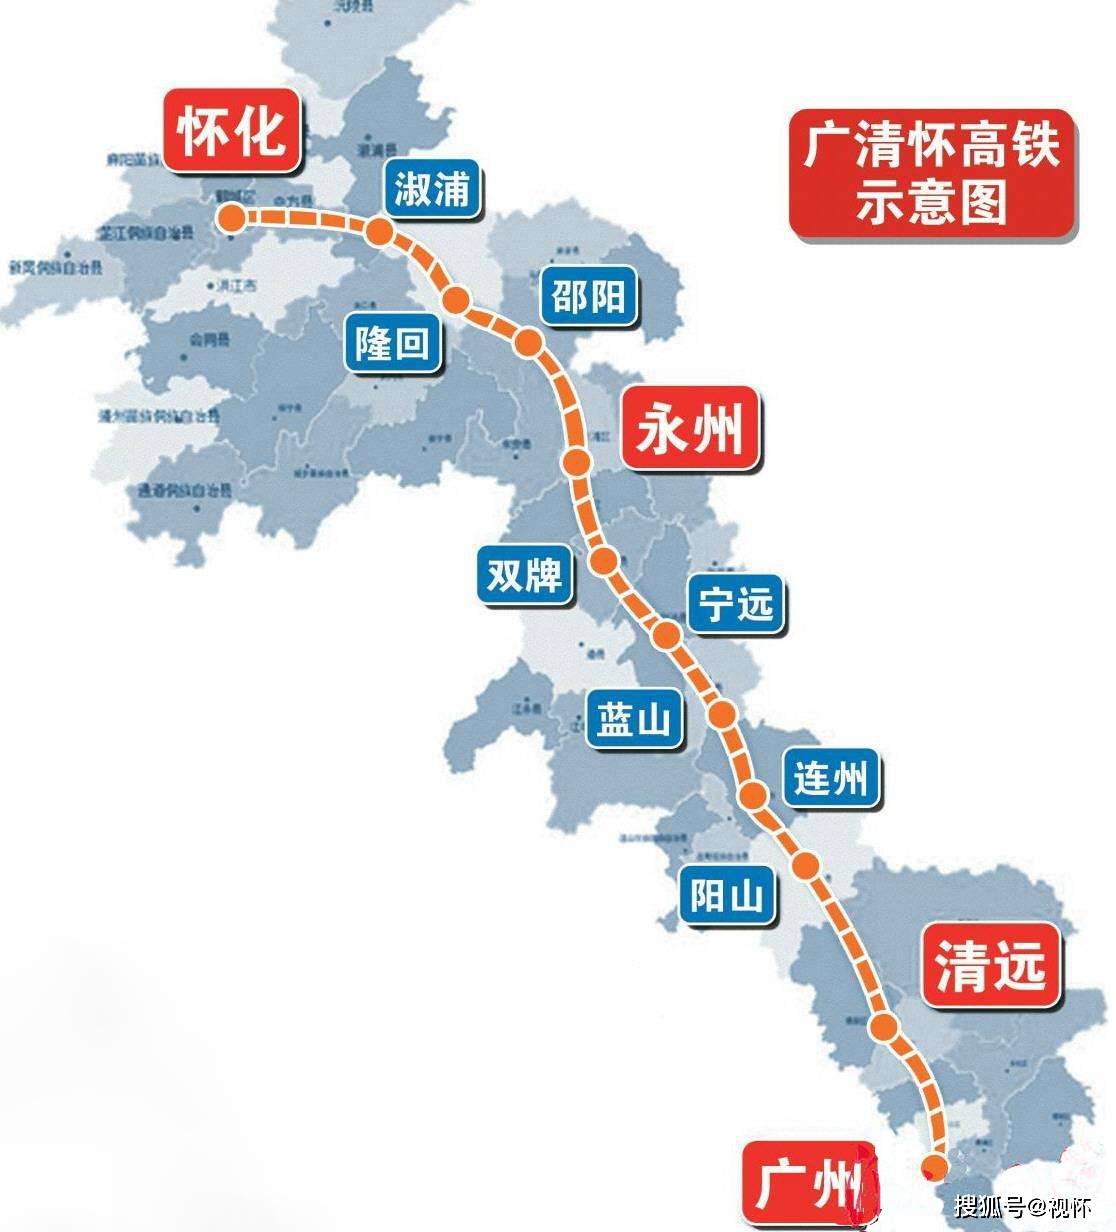 湖南今日又有两条高速公路开工！年底将实现“县县通高速” - 今日关注 - 湖南在线 - 华声在线